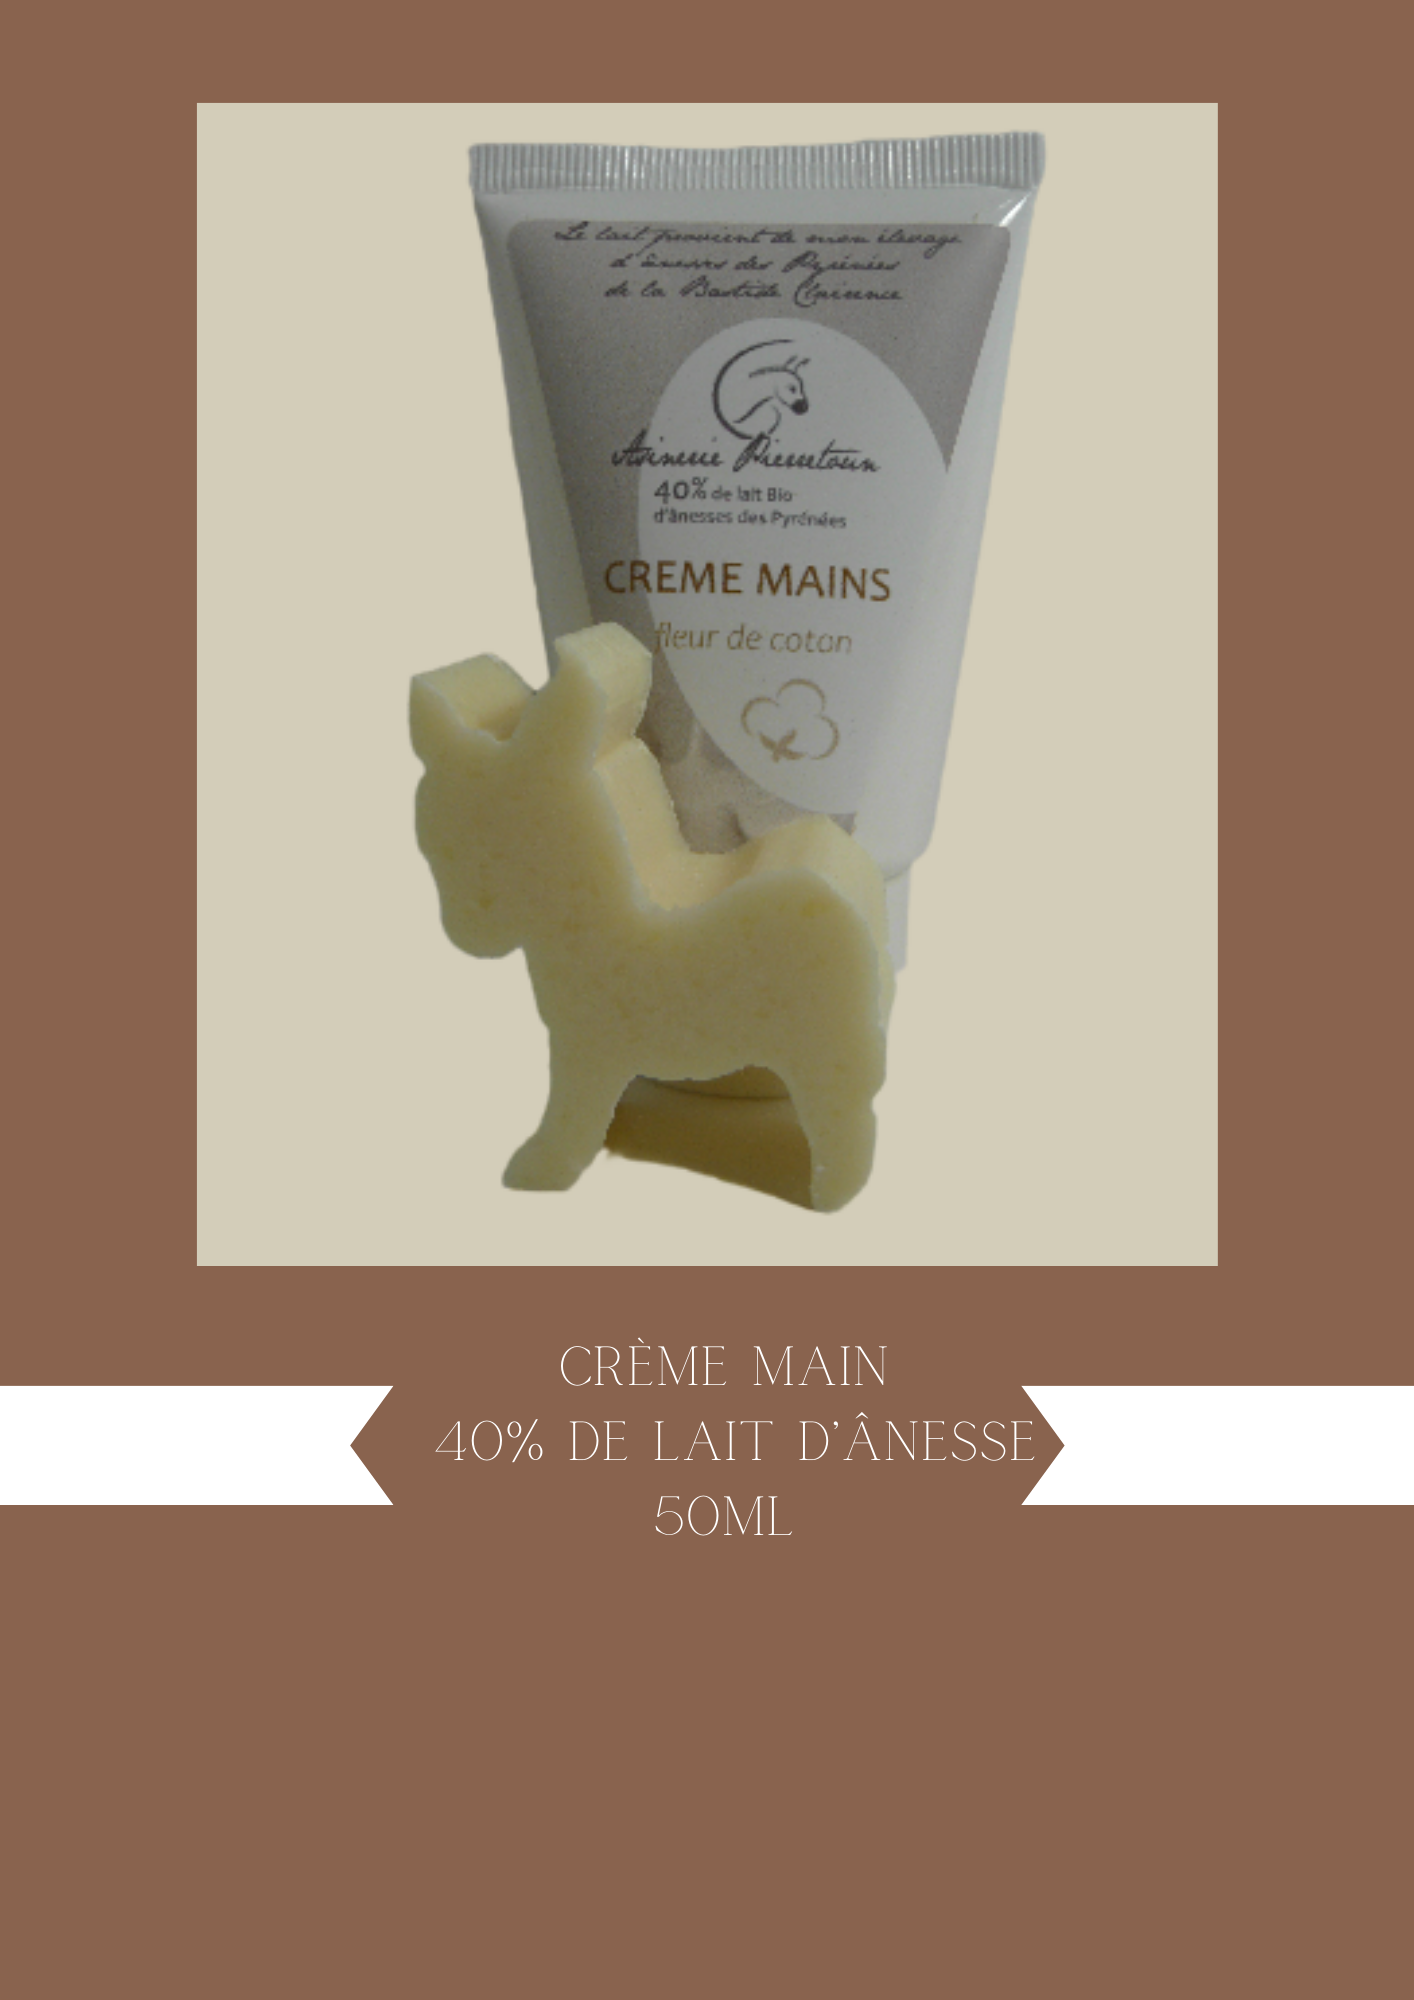 Crème mains 50ml 40% de lait d'ânesse Petit format